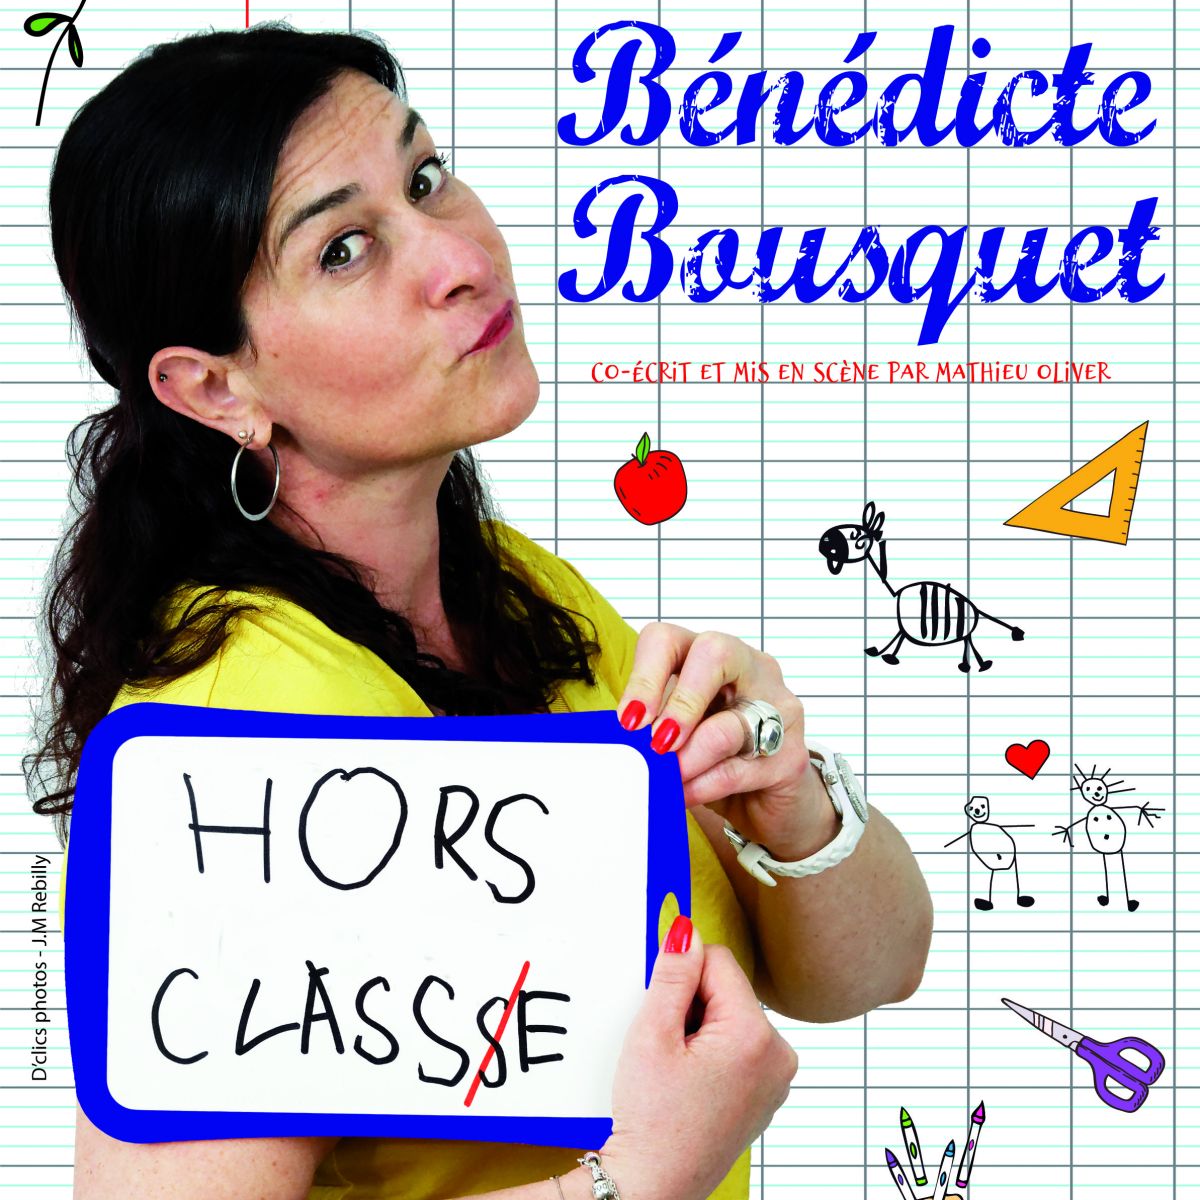 Bénédicte Bousquet "HORS CLASSE"